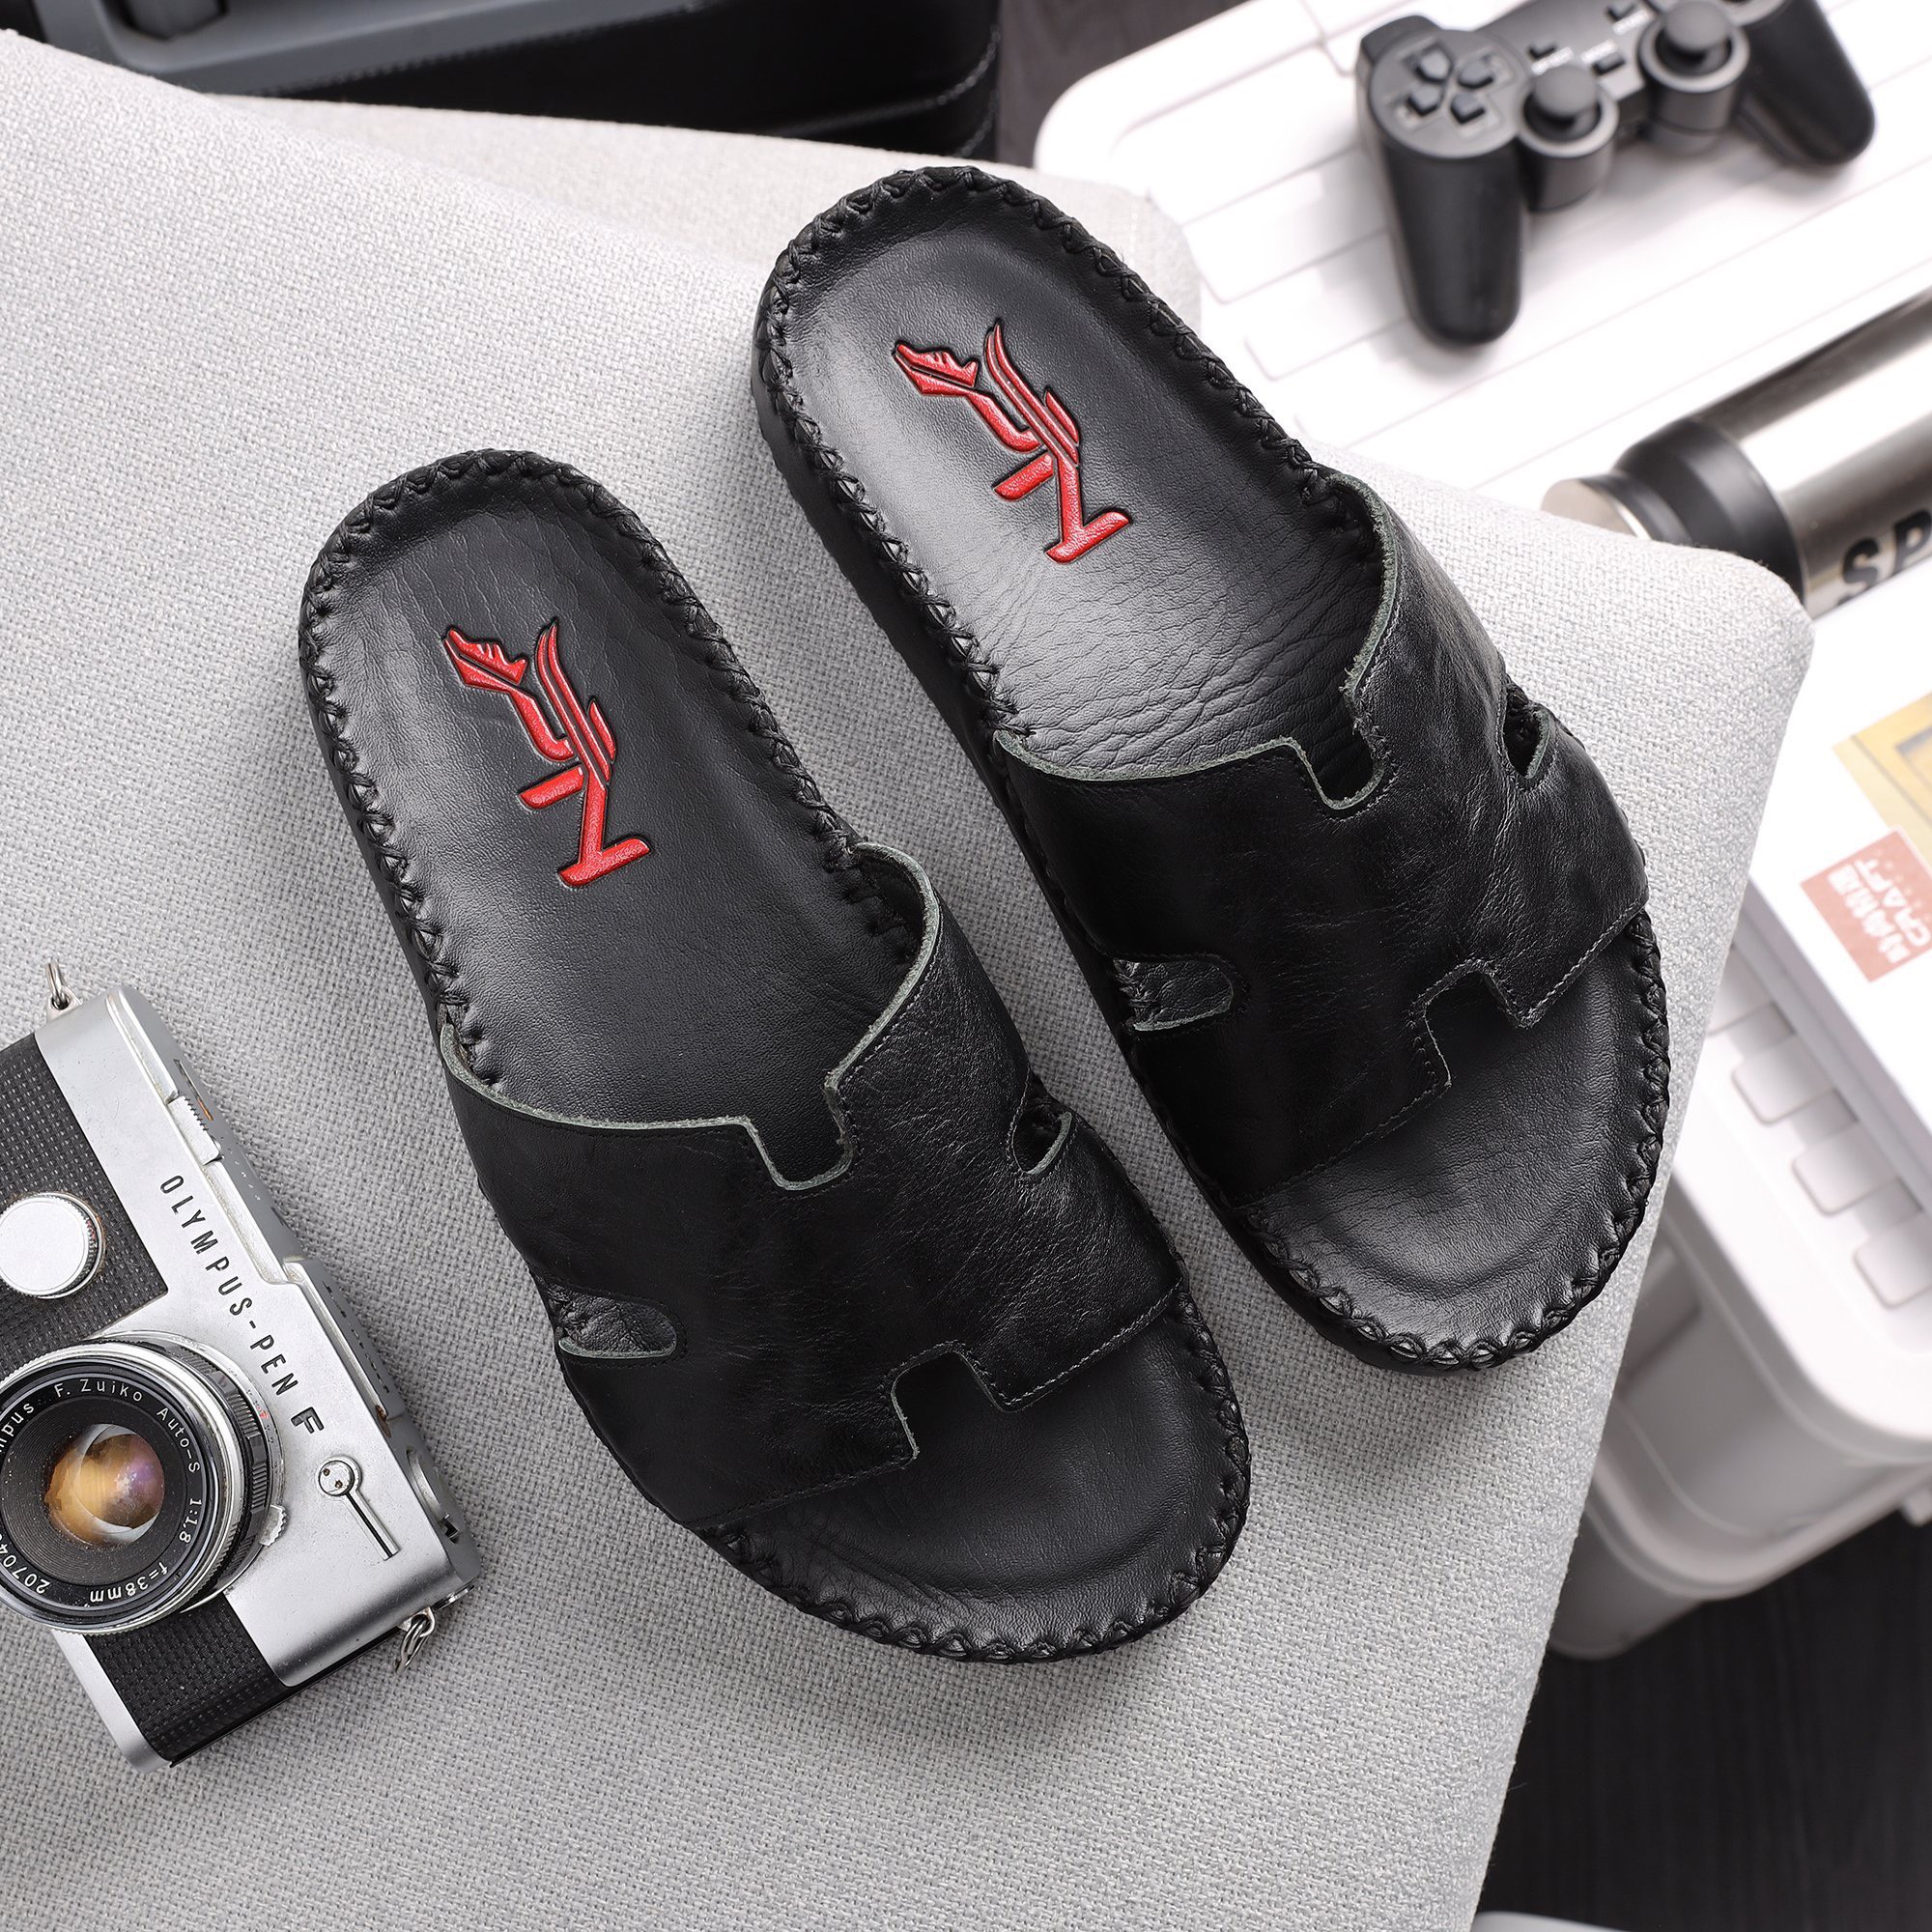 Giày da PN nỗ lực đem đến sản phẩm đồ da chất lượng cho khách hàng - Ảnh 2.